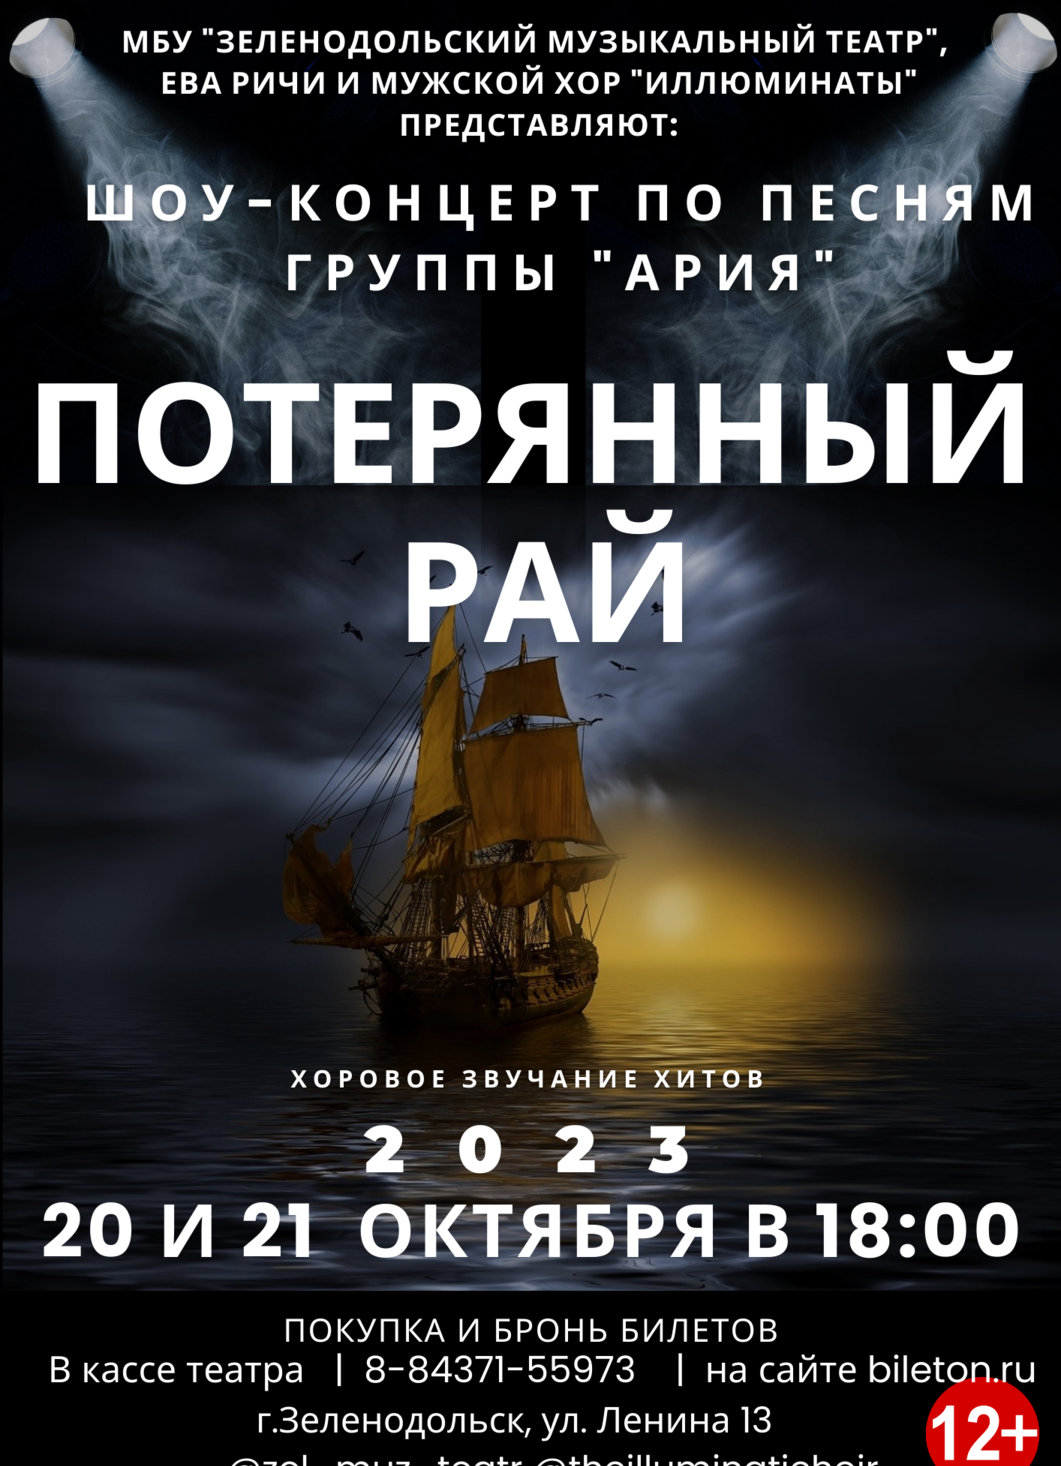 Шоу-концерт "Потерянный рай" по песням группы "АРИЯ" 20 и 21 октября в 18:00